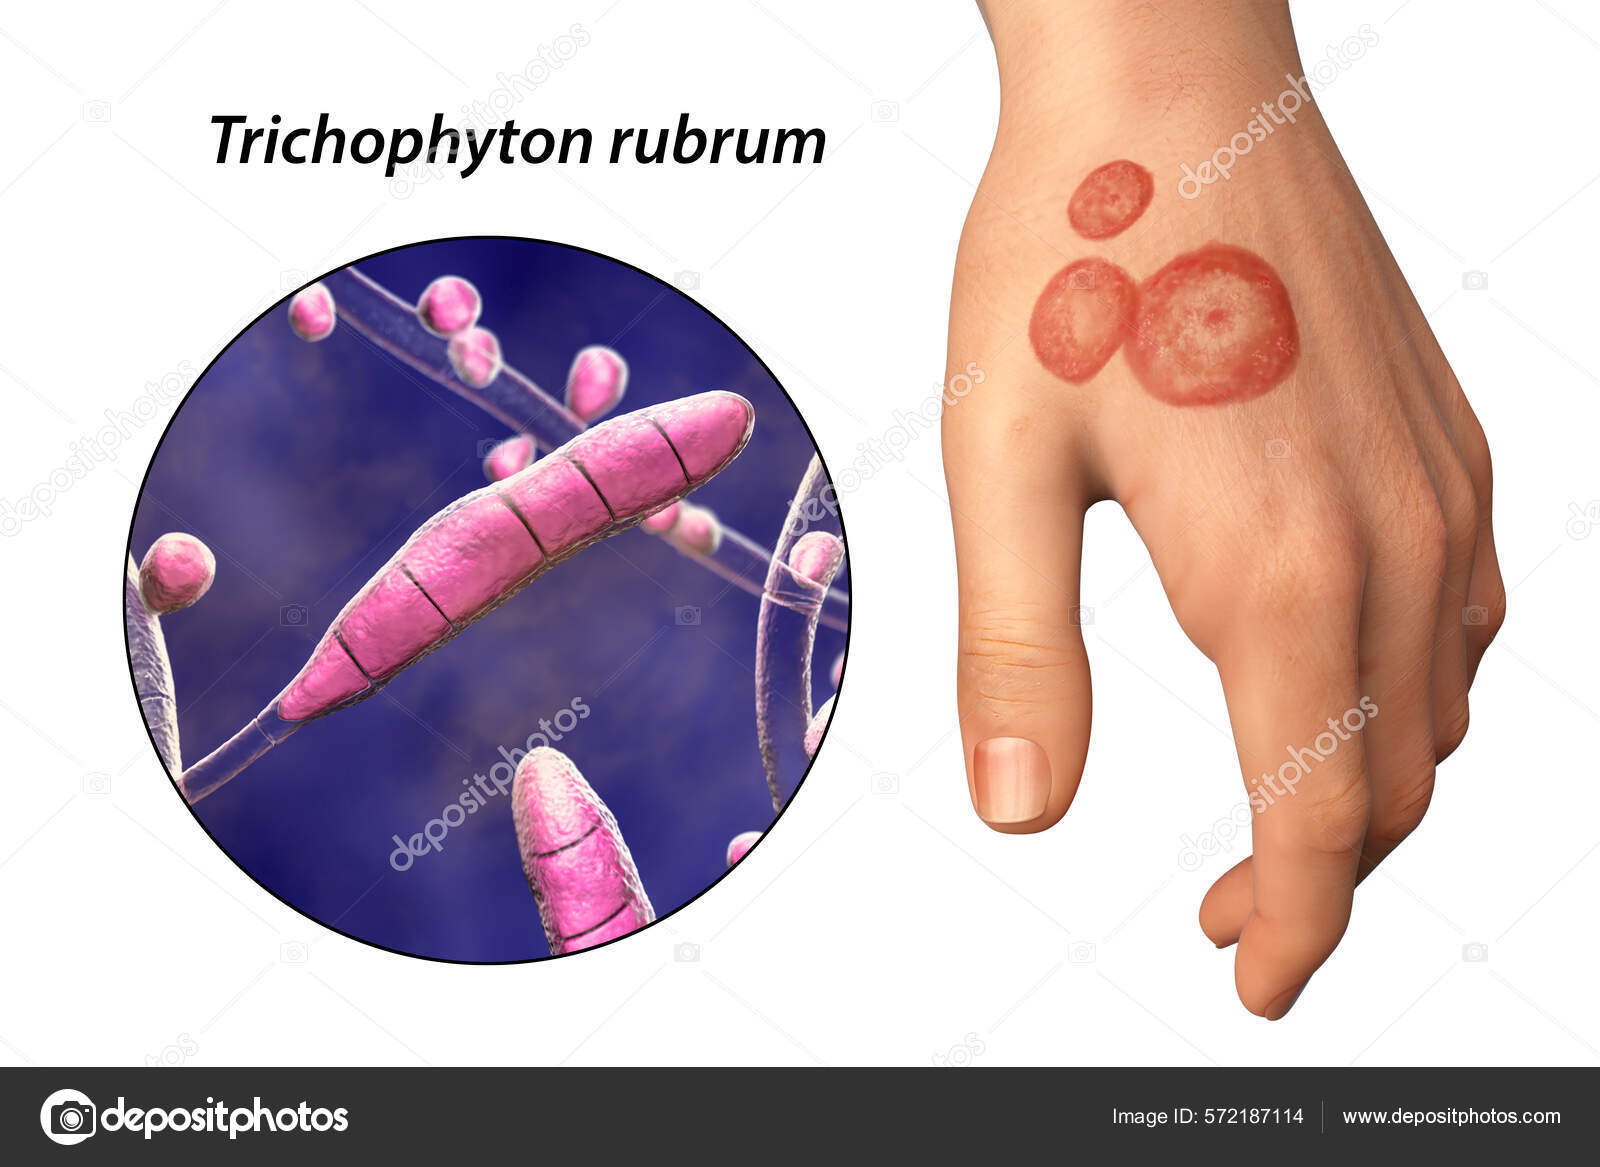 https://st.depositphotos.com/5316818/57218/i/1600/depositphotos_572187114-stock-photo-fungal-infection-man-hand-tinea.jpg